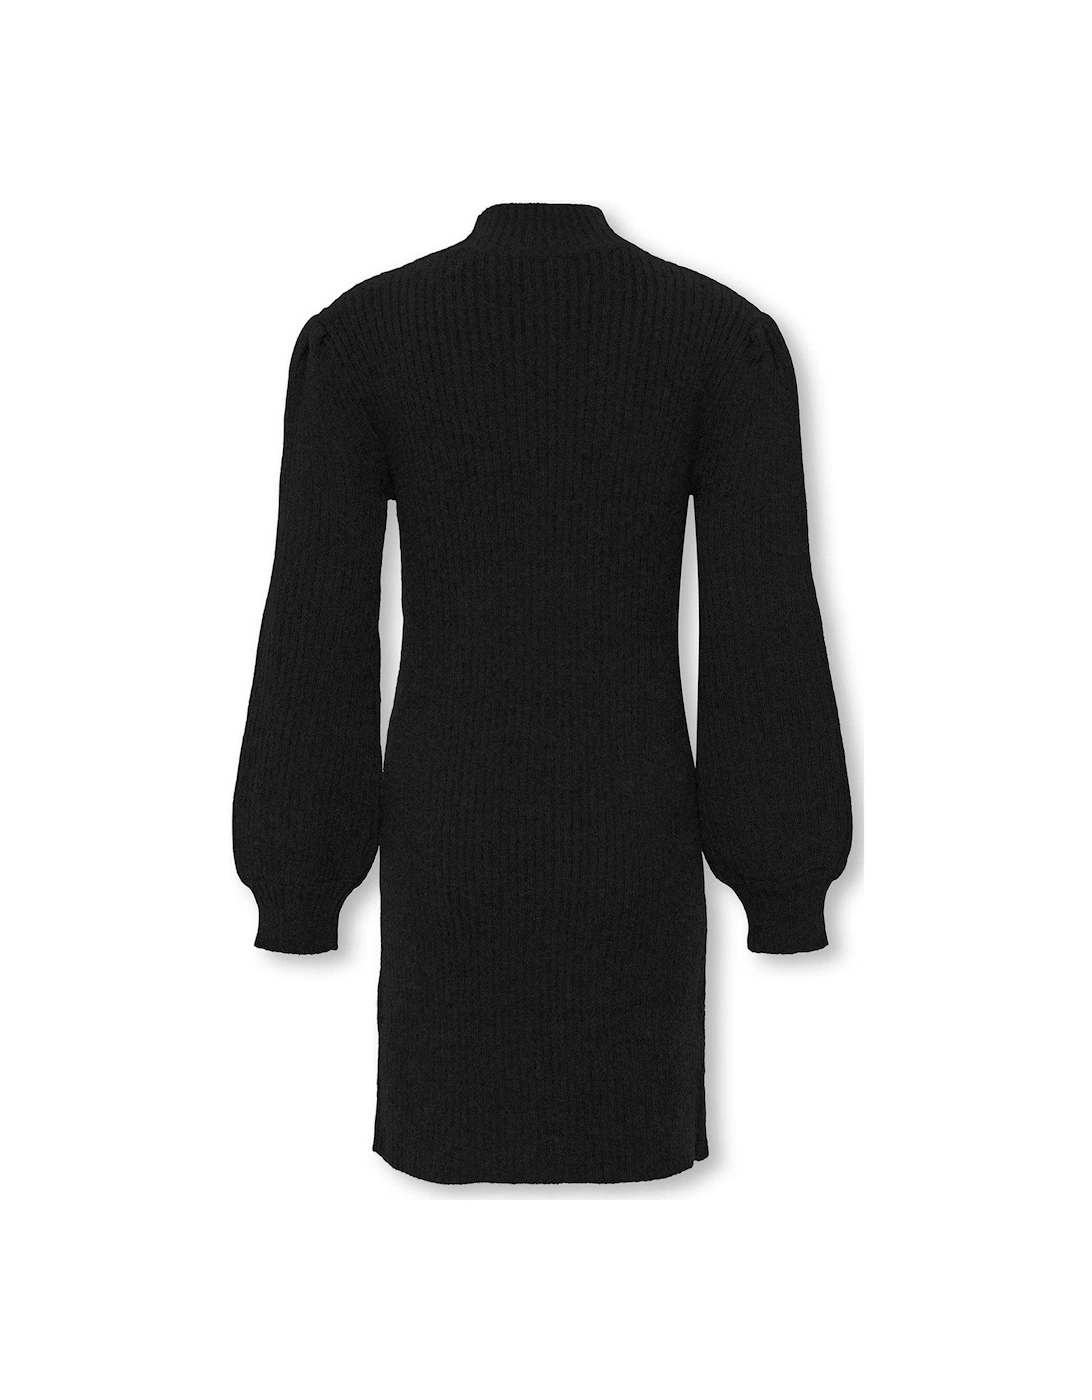 Girls Knitted Dress - Black